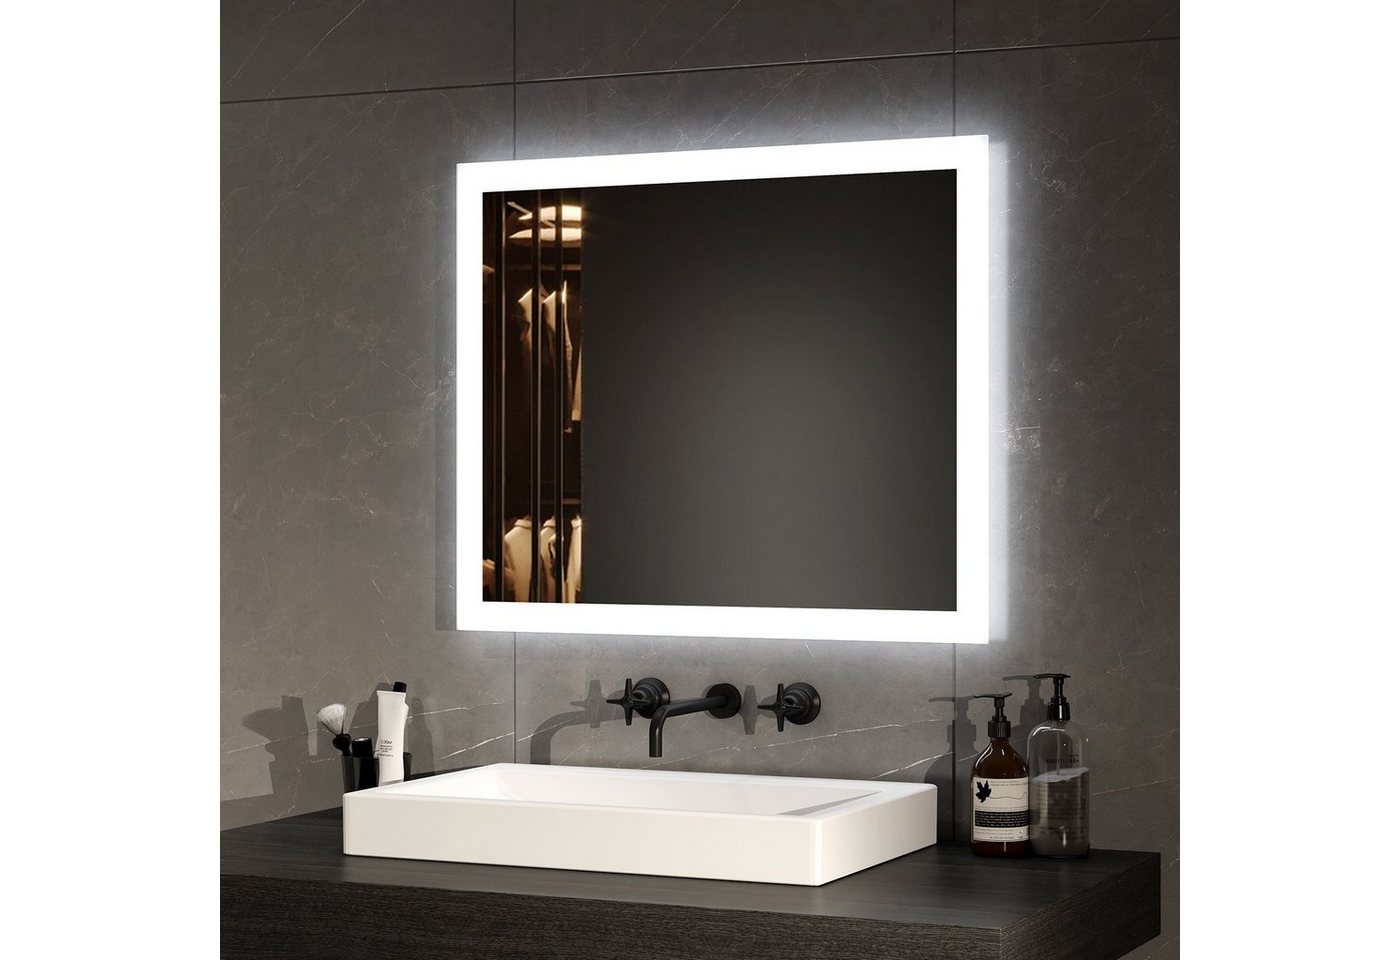 EMKE Badspiegel LED Badspiegel mit Beleuchtung Badezimmerspiegel Wandspiegel, mit Beschlagfrei, 2 Lichtfarbe Warmweiß/Kaltweiß von EMKE